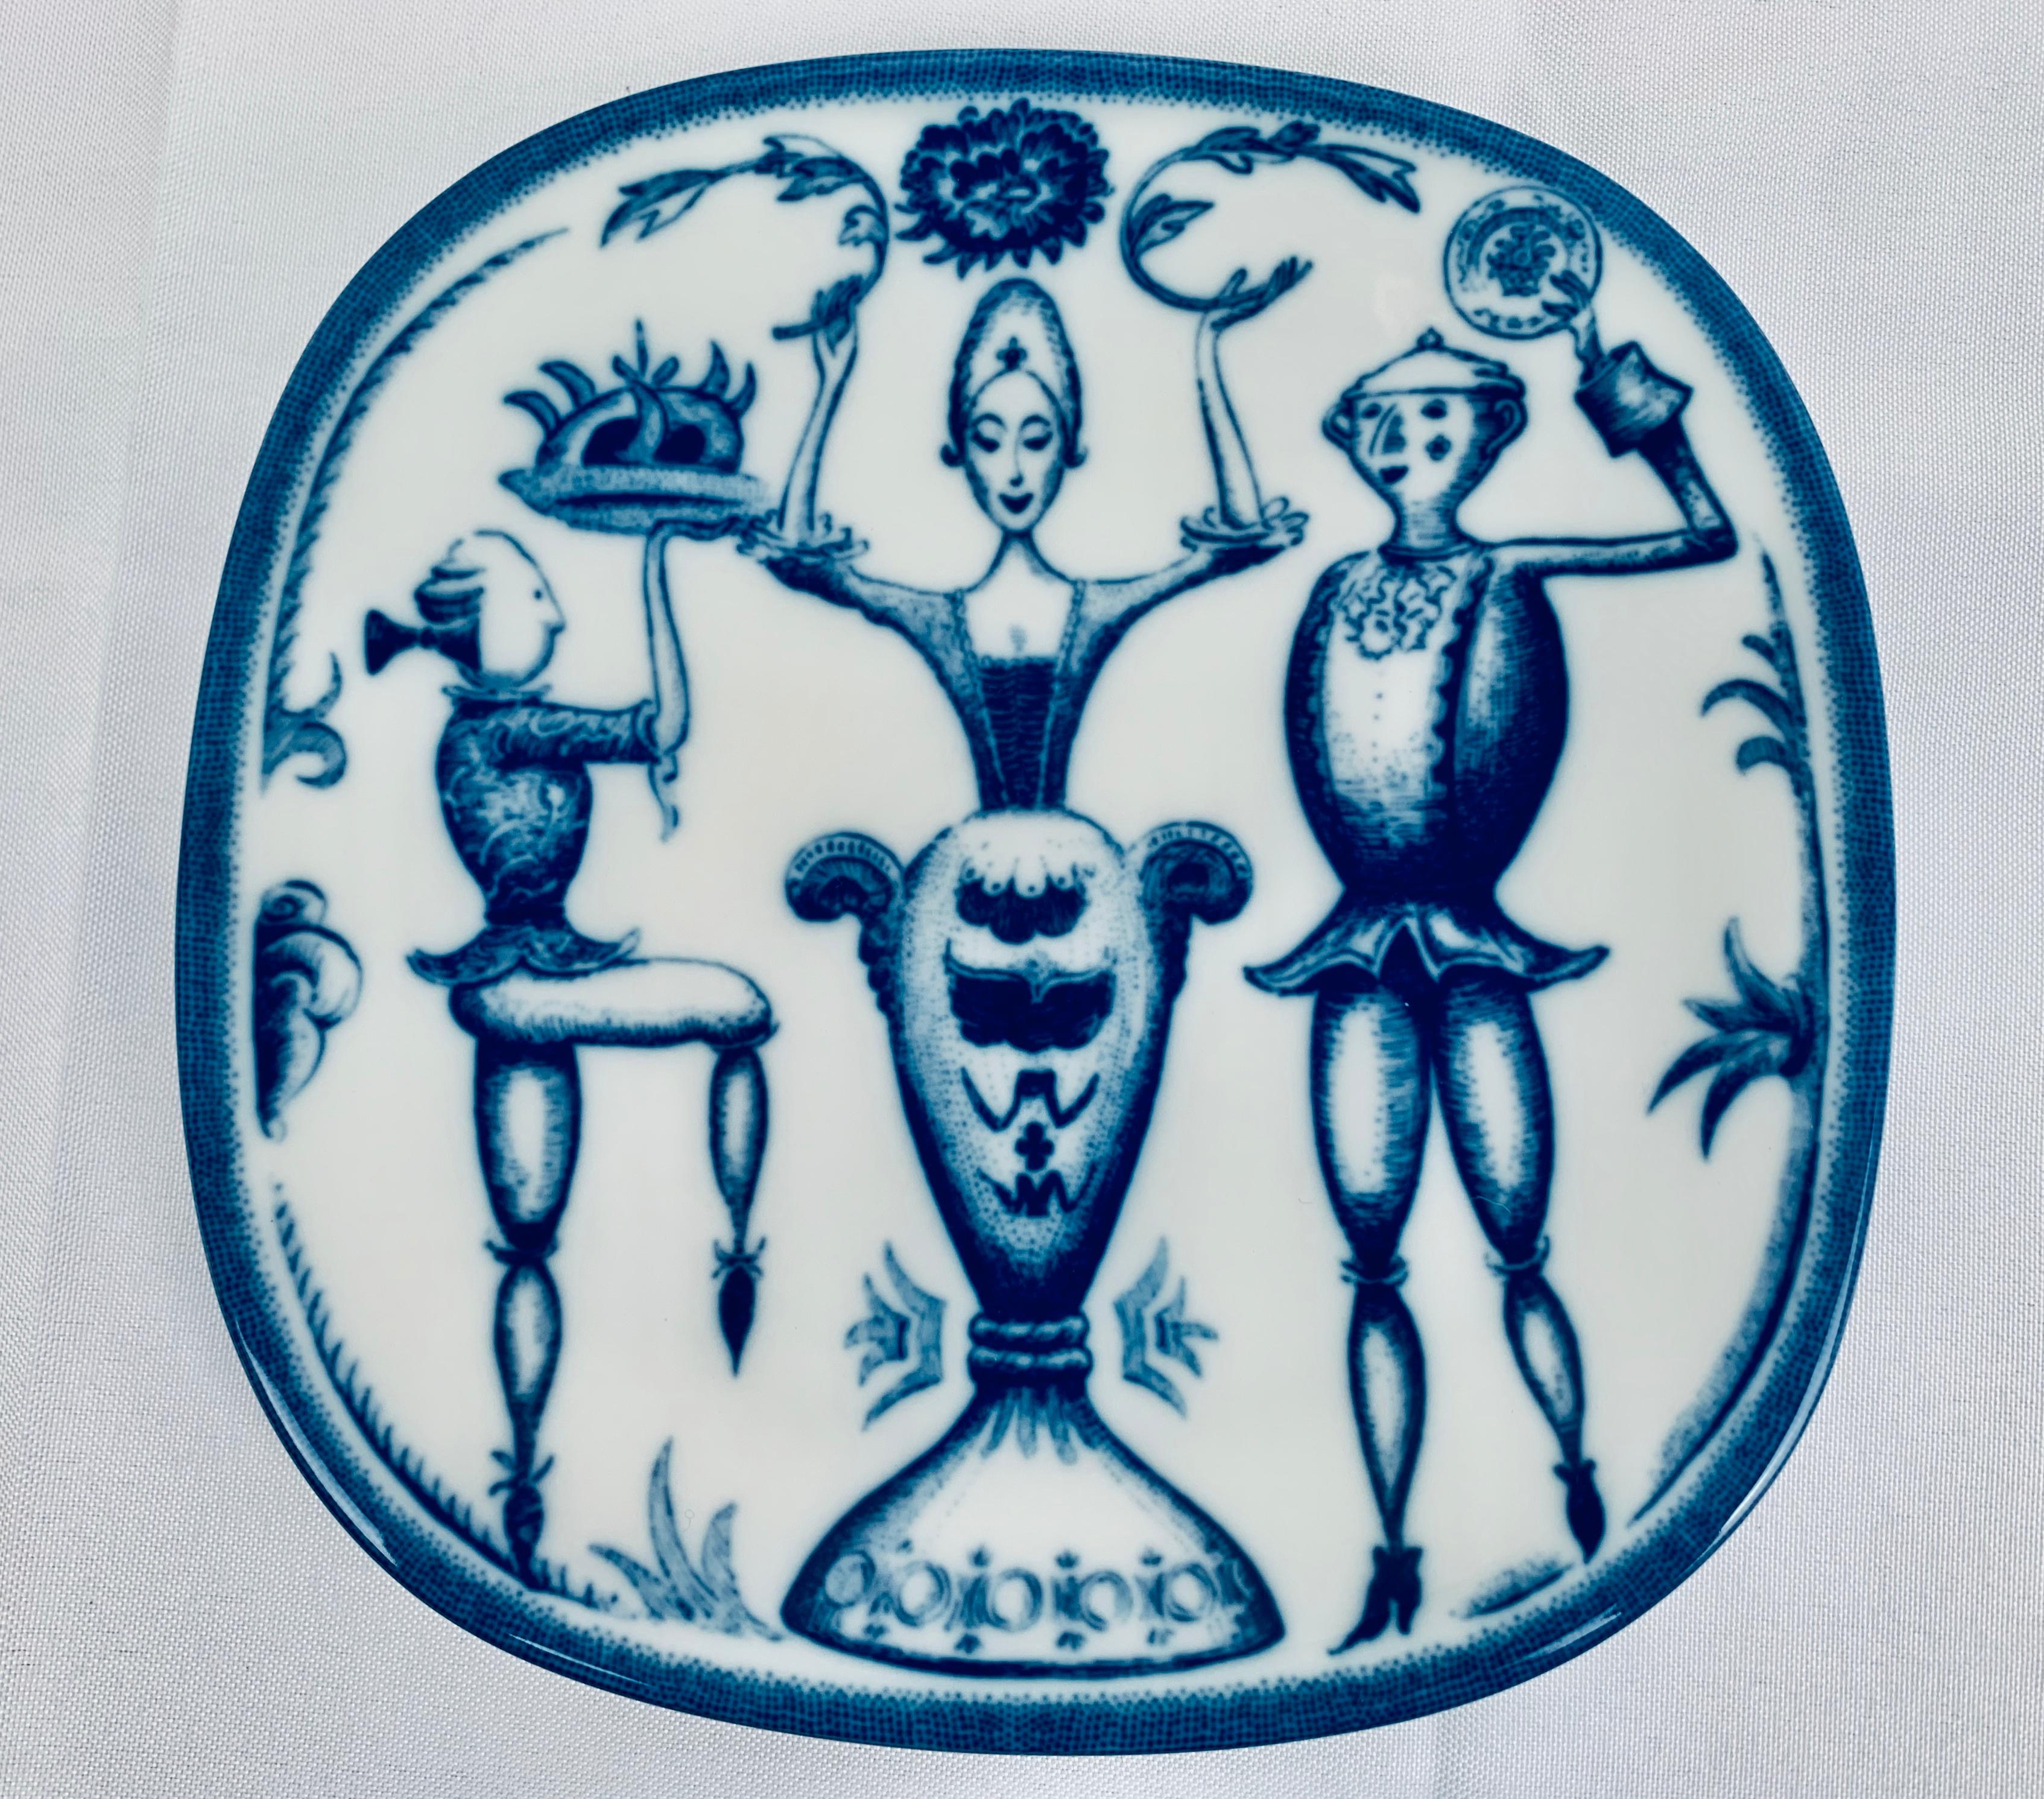 Modern Rörstrand Porcelain Commemorative Plates-Niels-Christian Hald in Blue, Sweden